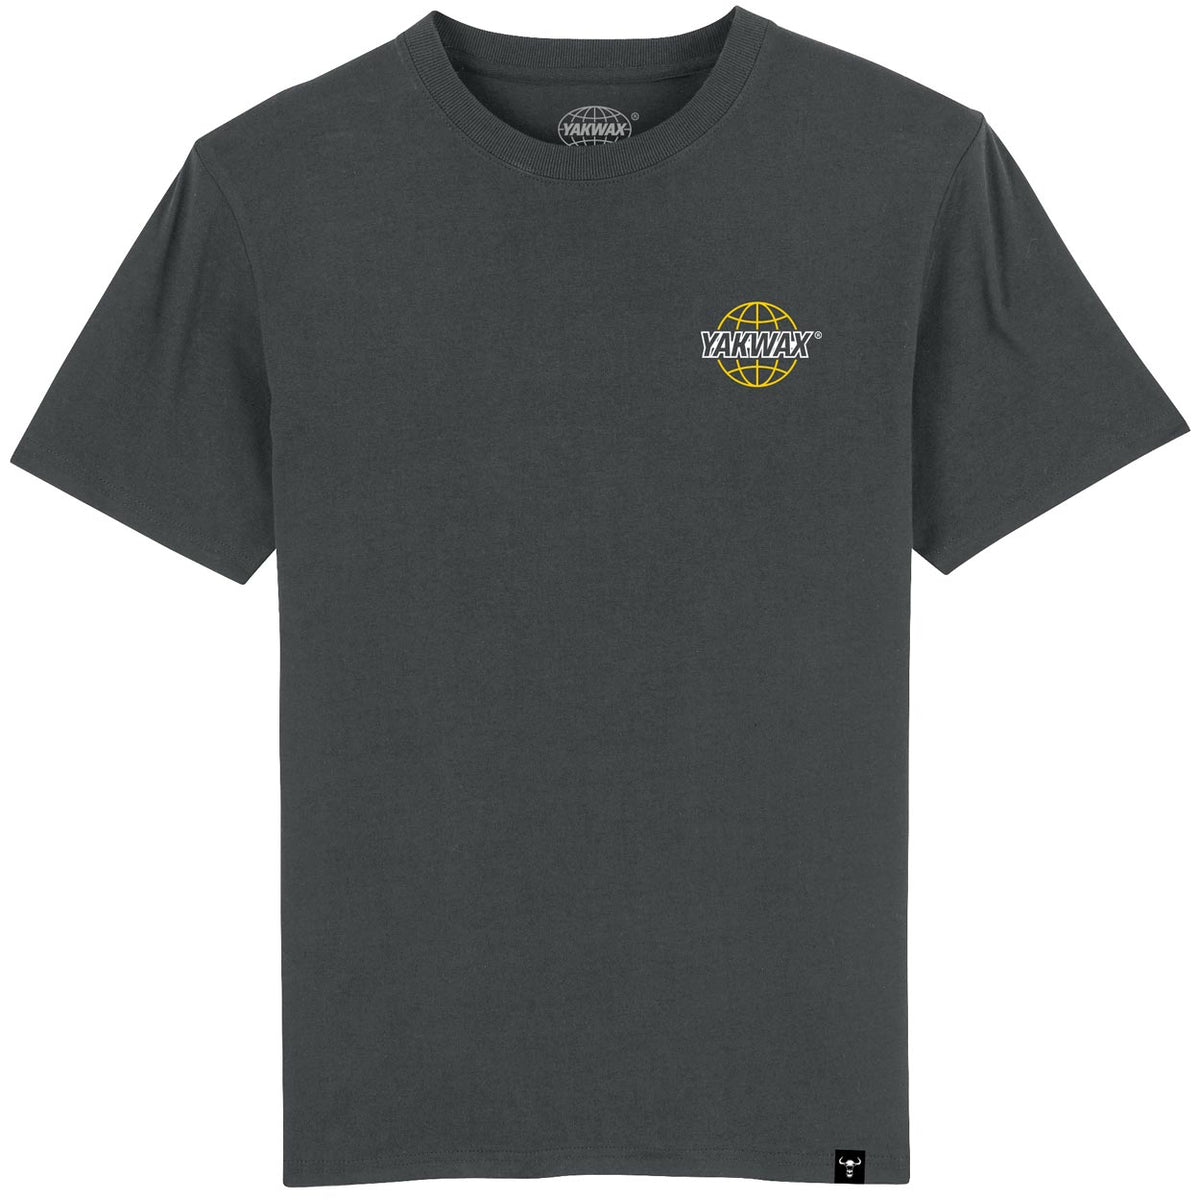 Yakwax Worldwide T-Shirt - Gunmetal/Gold - Mens Graphic T-Shirt by Yakwax